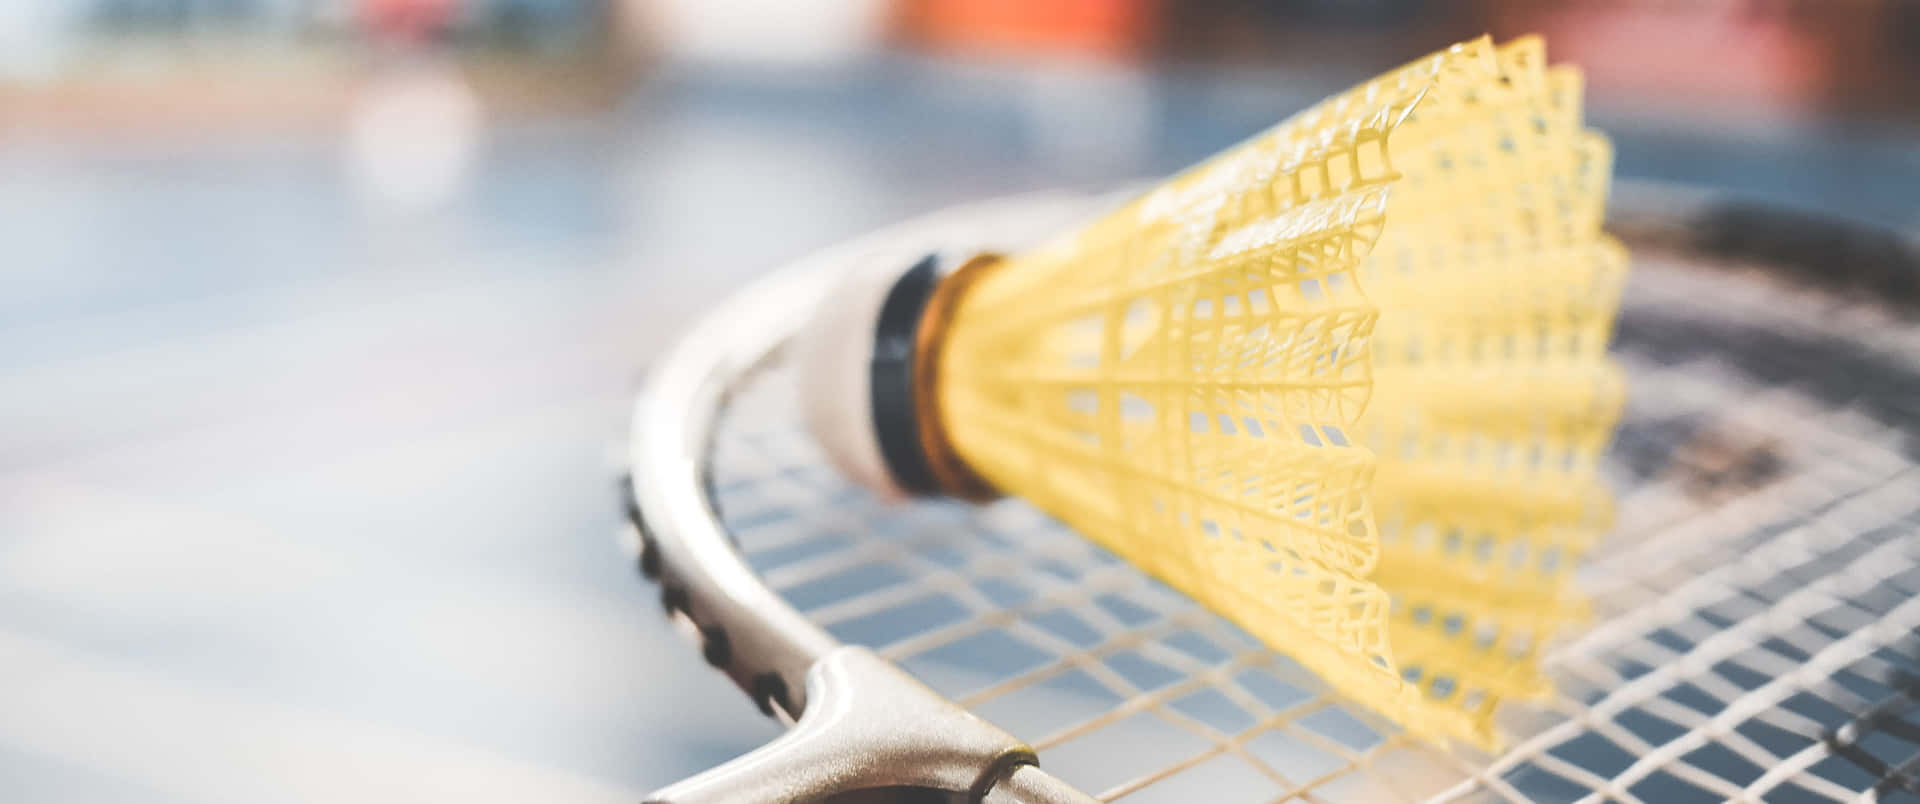 Enprofessionell Badmintonspelare Slår En Smash.